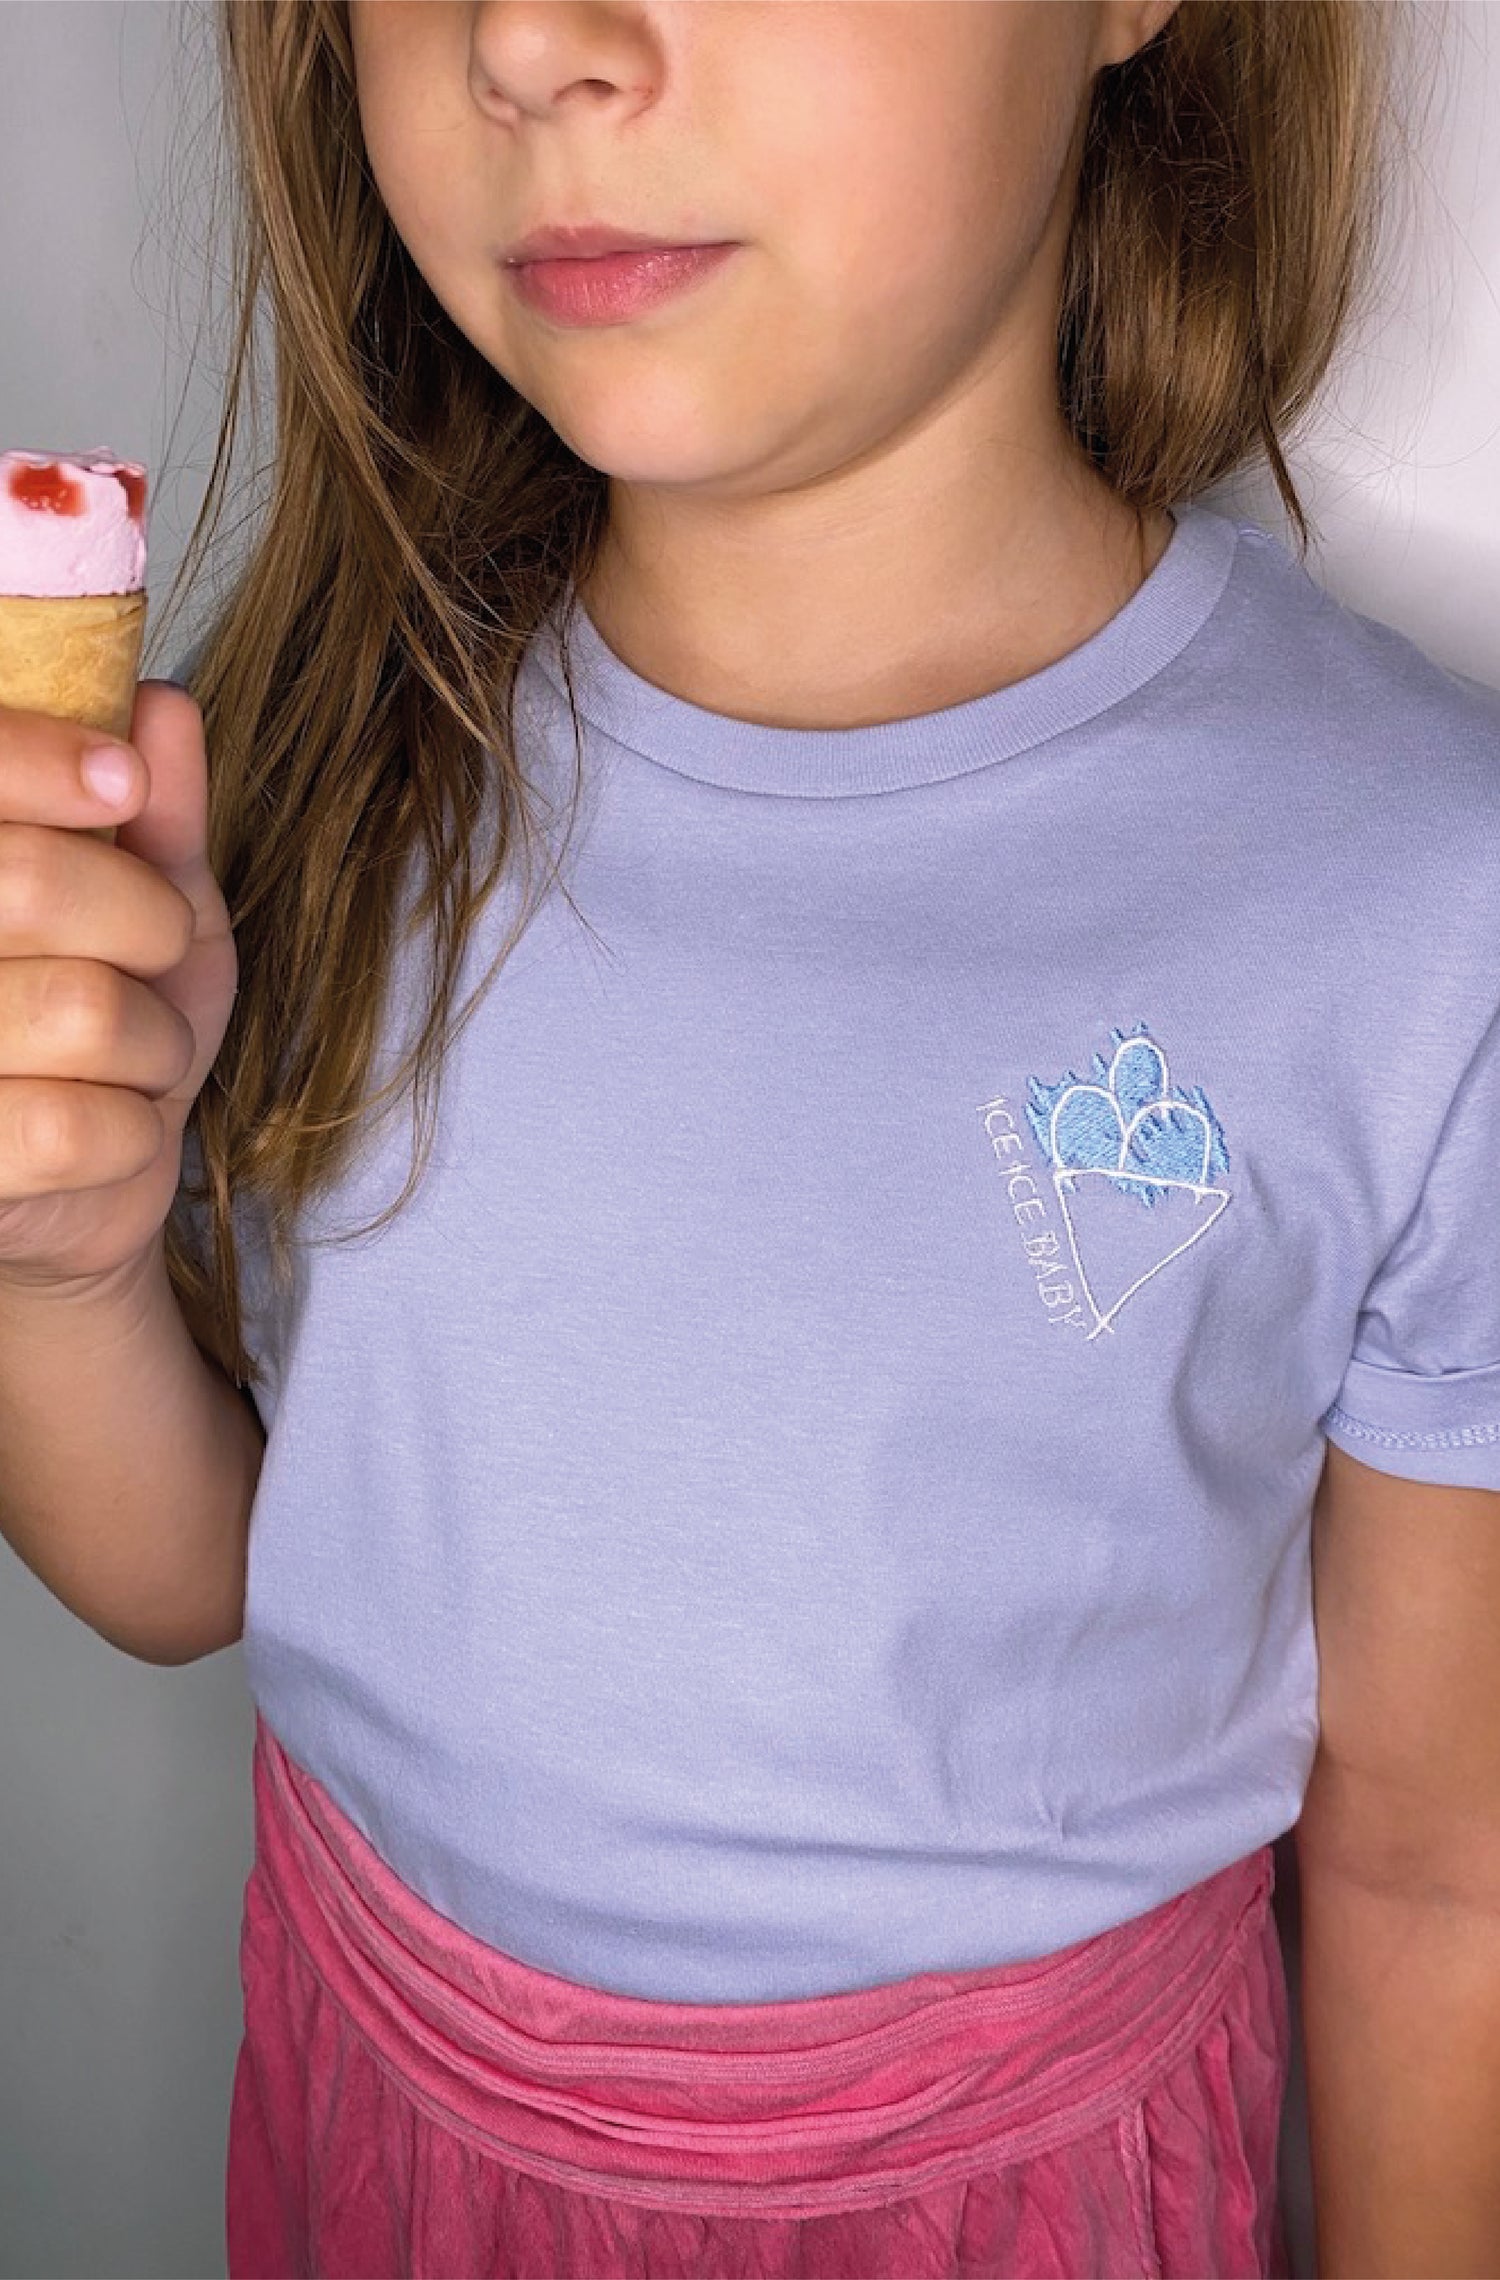 4littlearts T-Shirt 'Ice ice baby' für Kinder, aus Biobaumwolle, mit einzigartiger Stickerei, nachhaltige Mode 